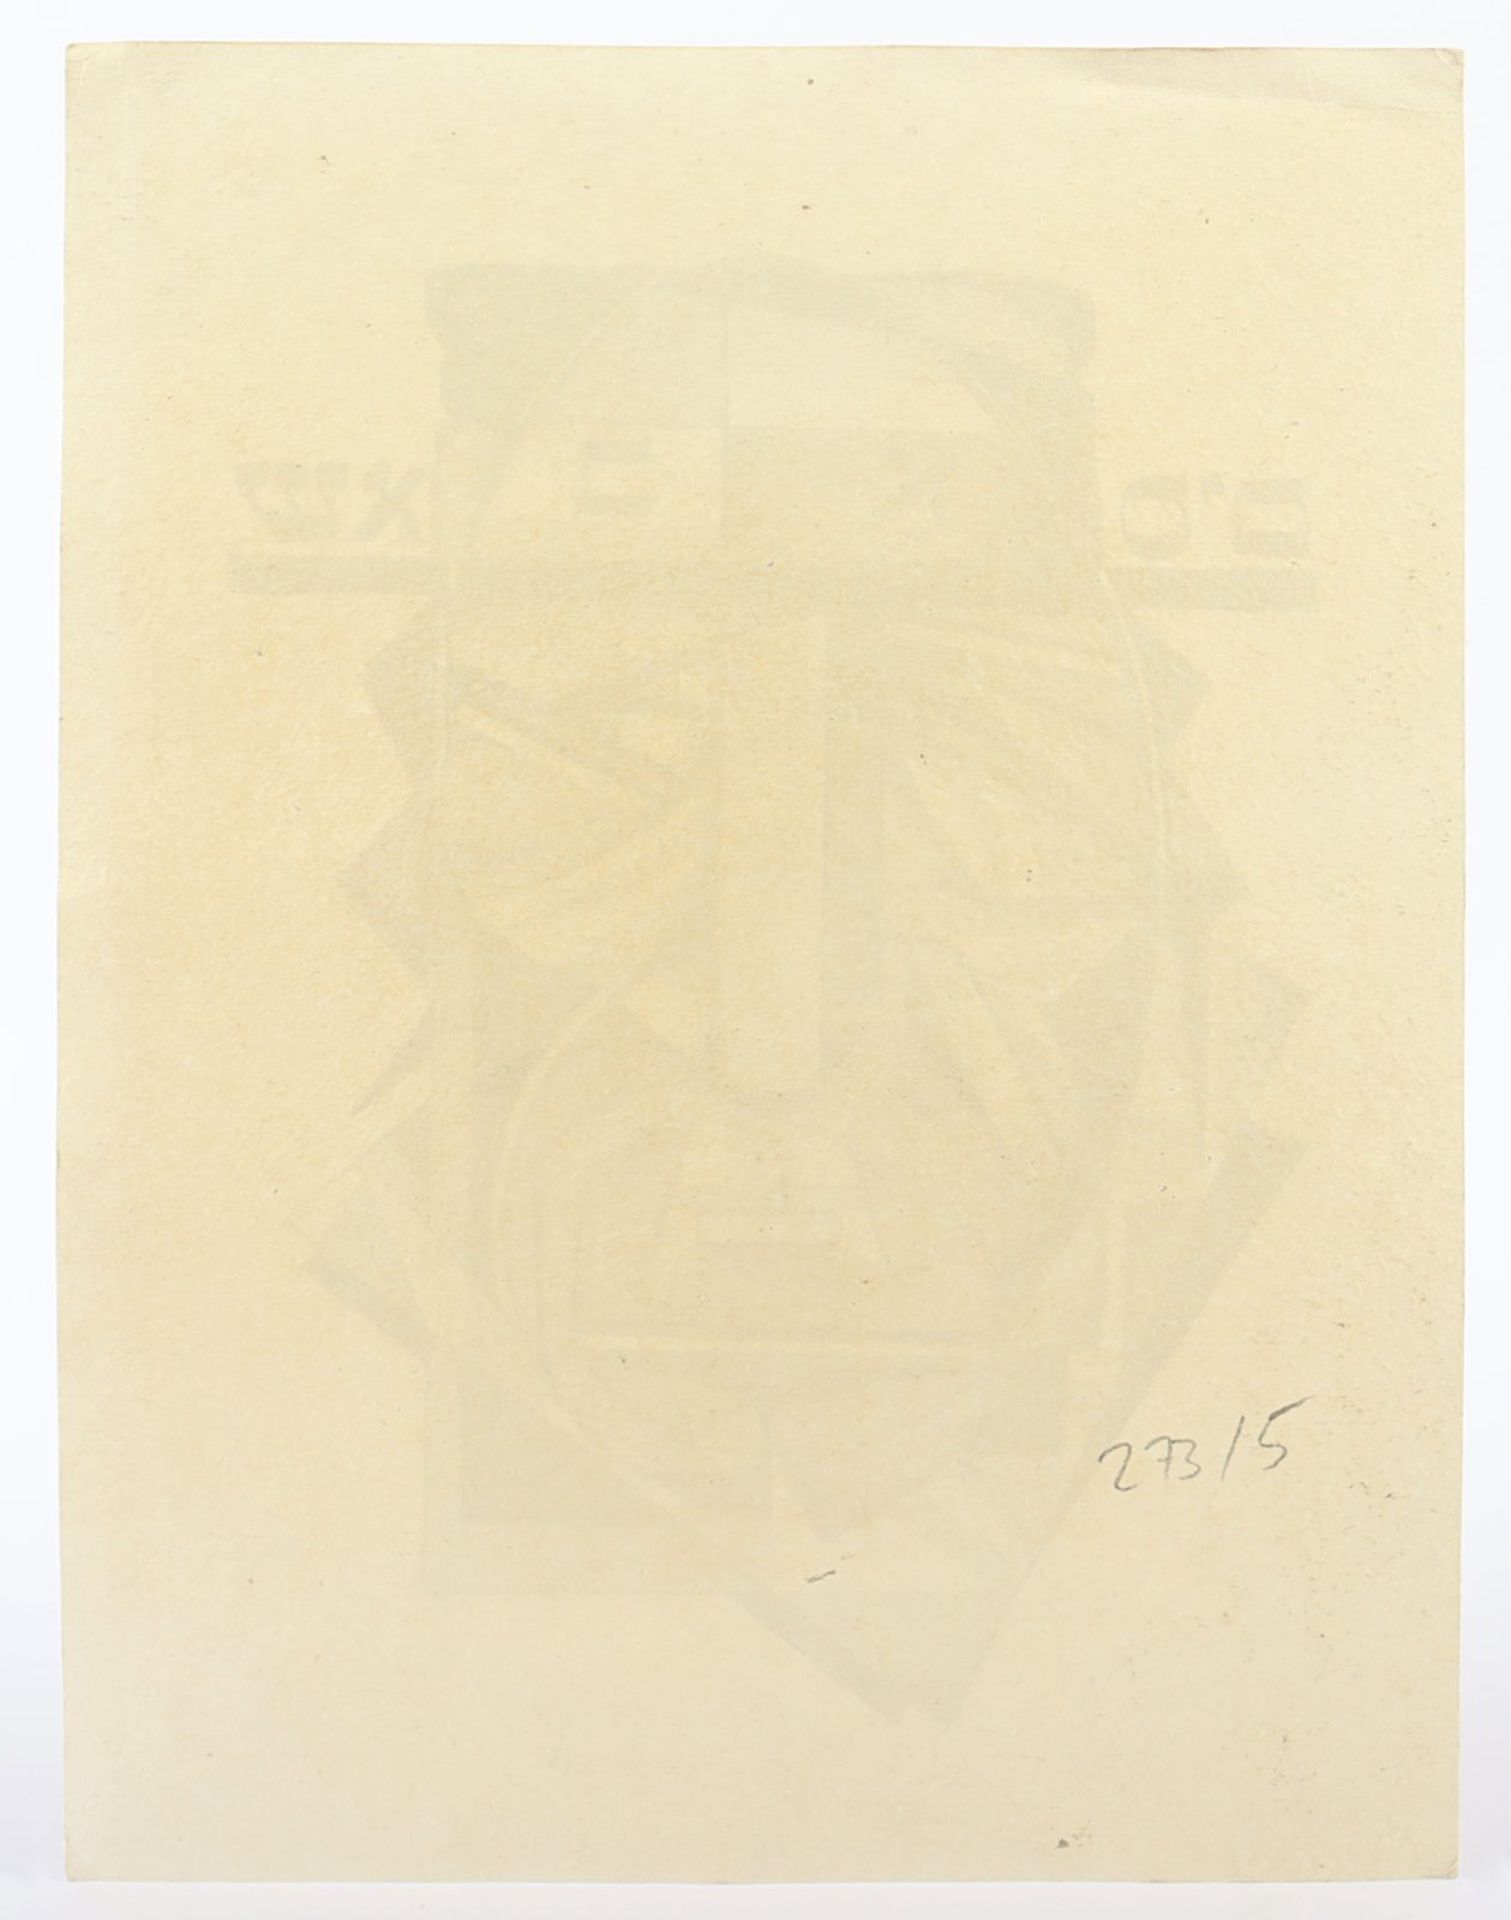 LIEBERMANN, Ilya (russischer Konstruktivist um 1920/30), "Männerkopf mit hebräischen Schriftzeichen" - Image 2 of 2